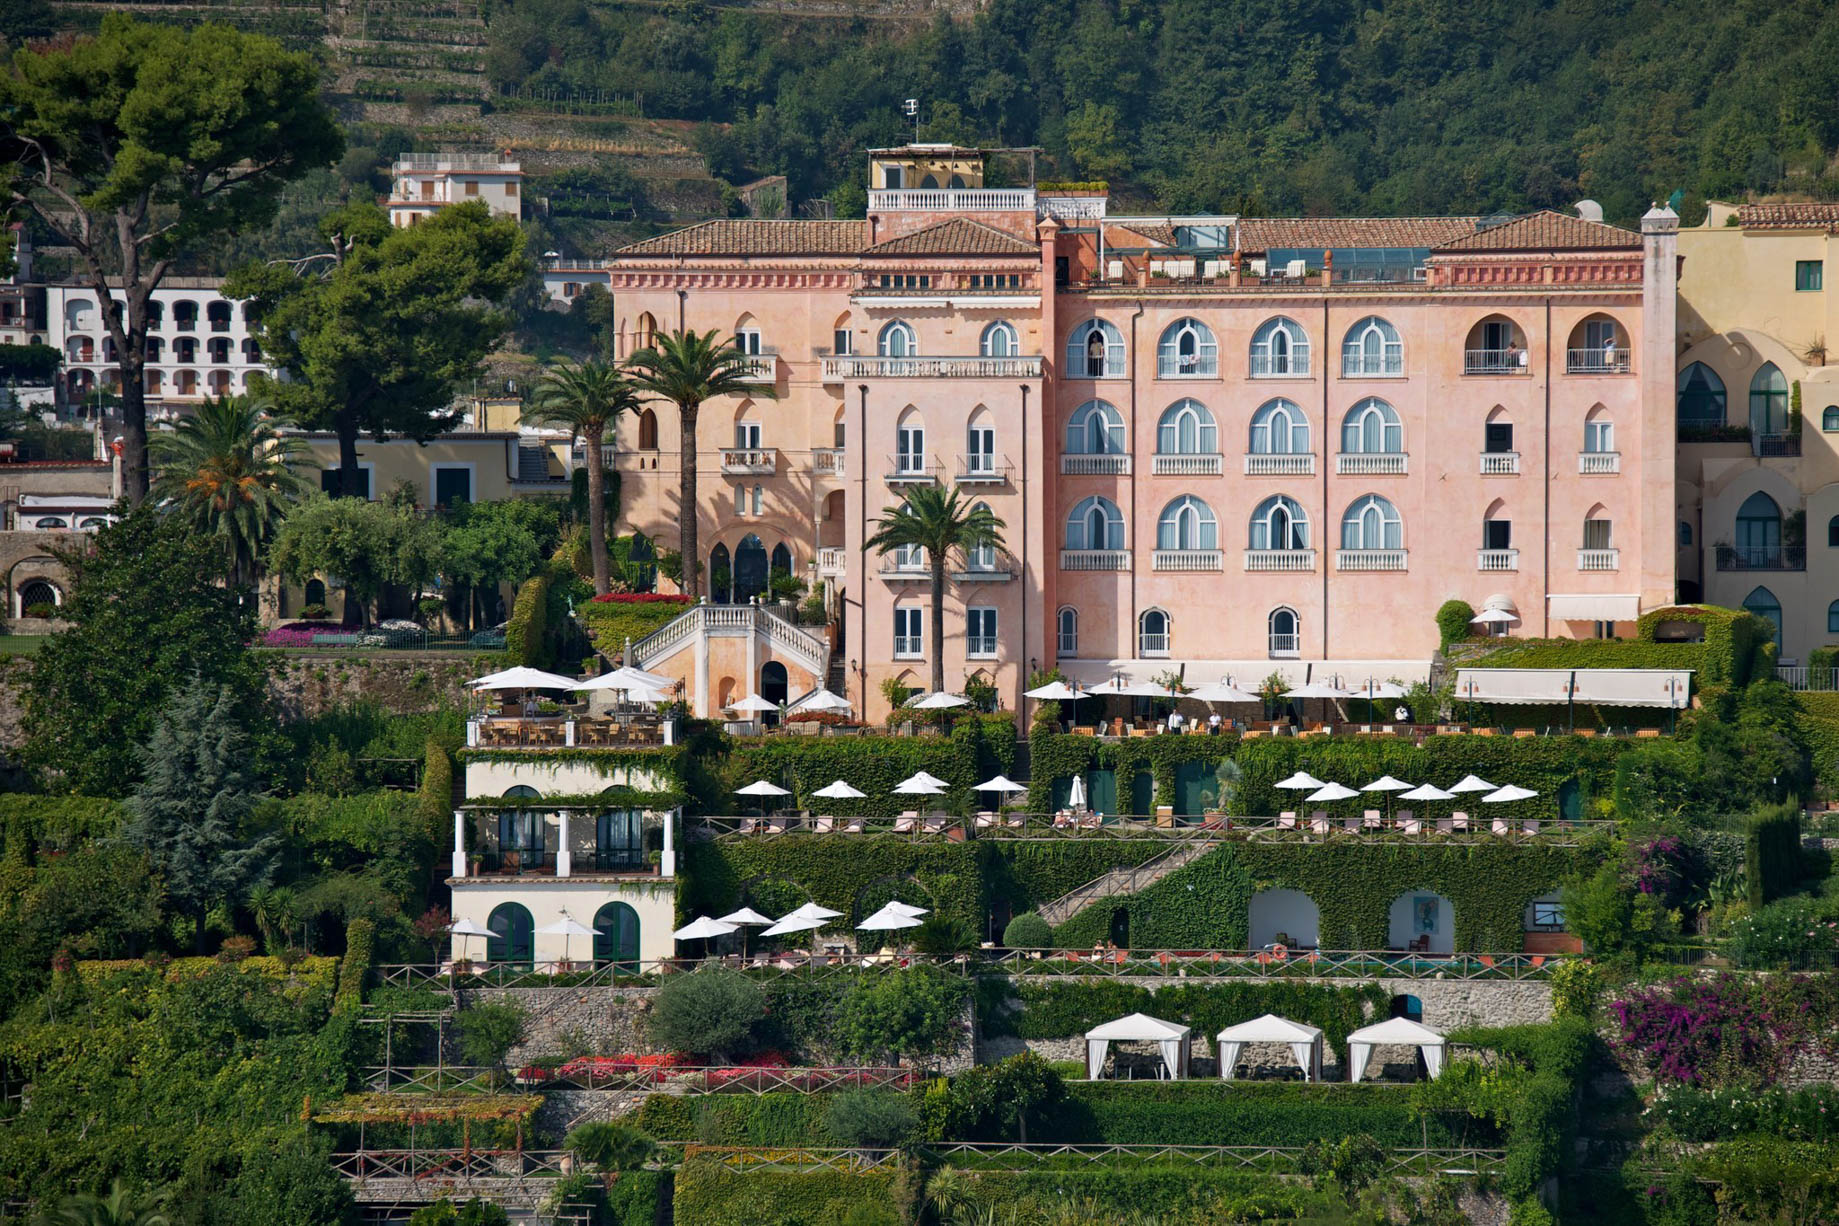 Palazzo Avino Hotel – Amalfi Coast, Ravello, Italy – Aerial View